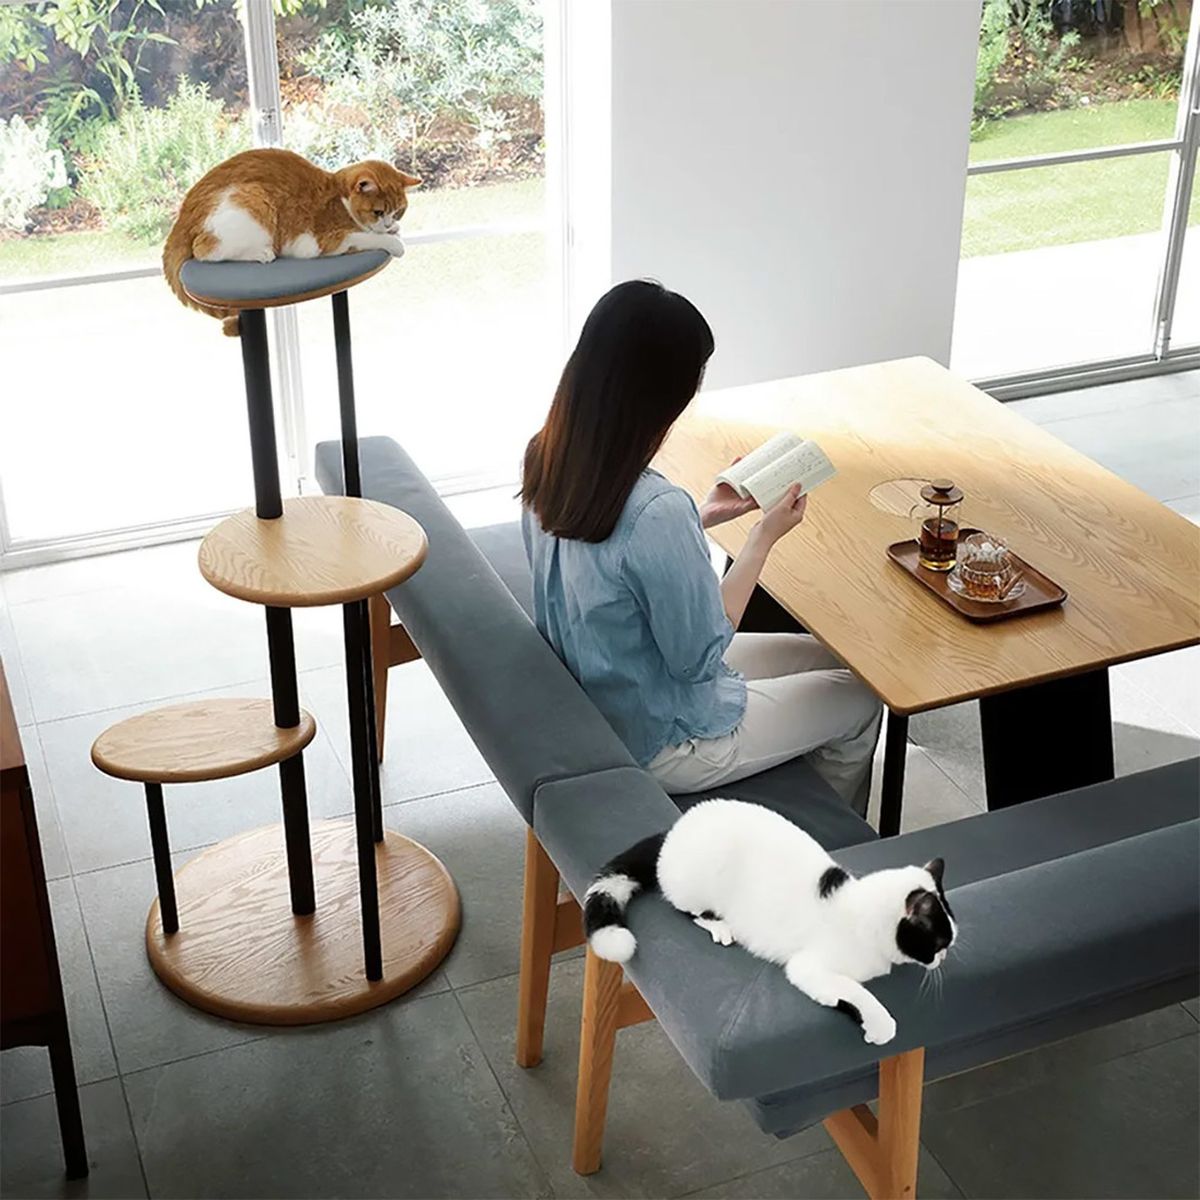 Japón: Diseñan mesa con orificio en el centro para gatos